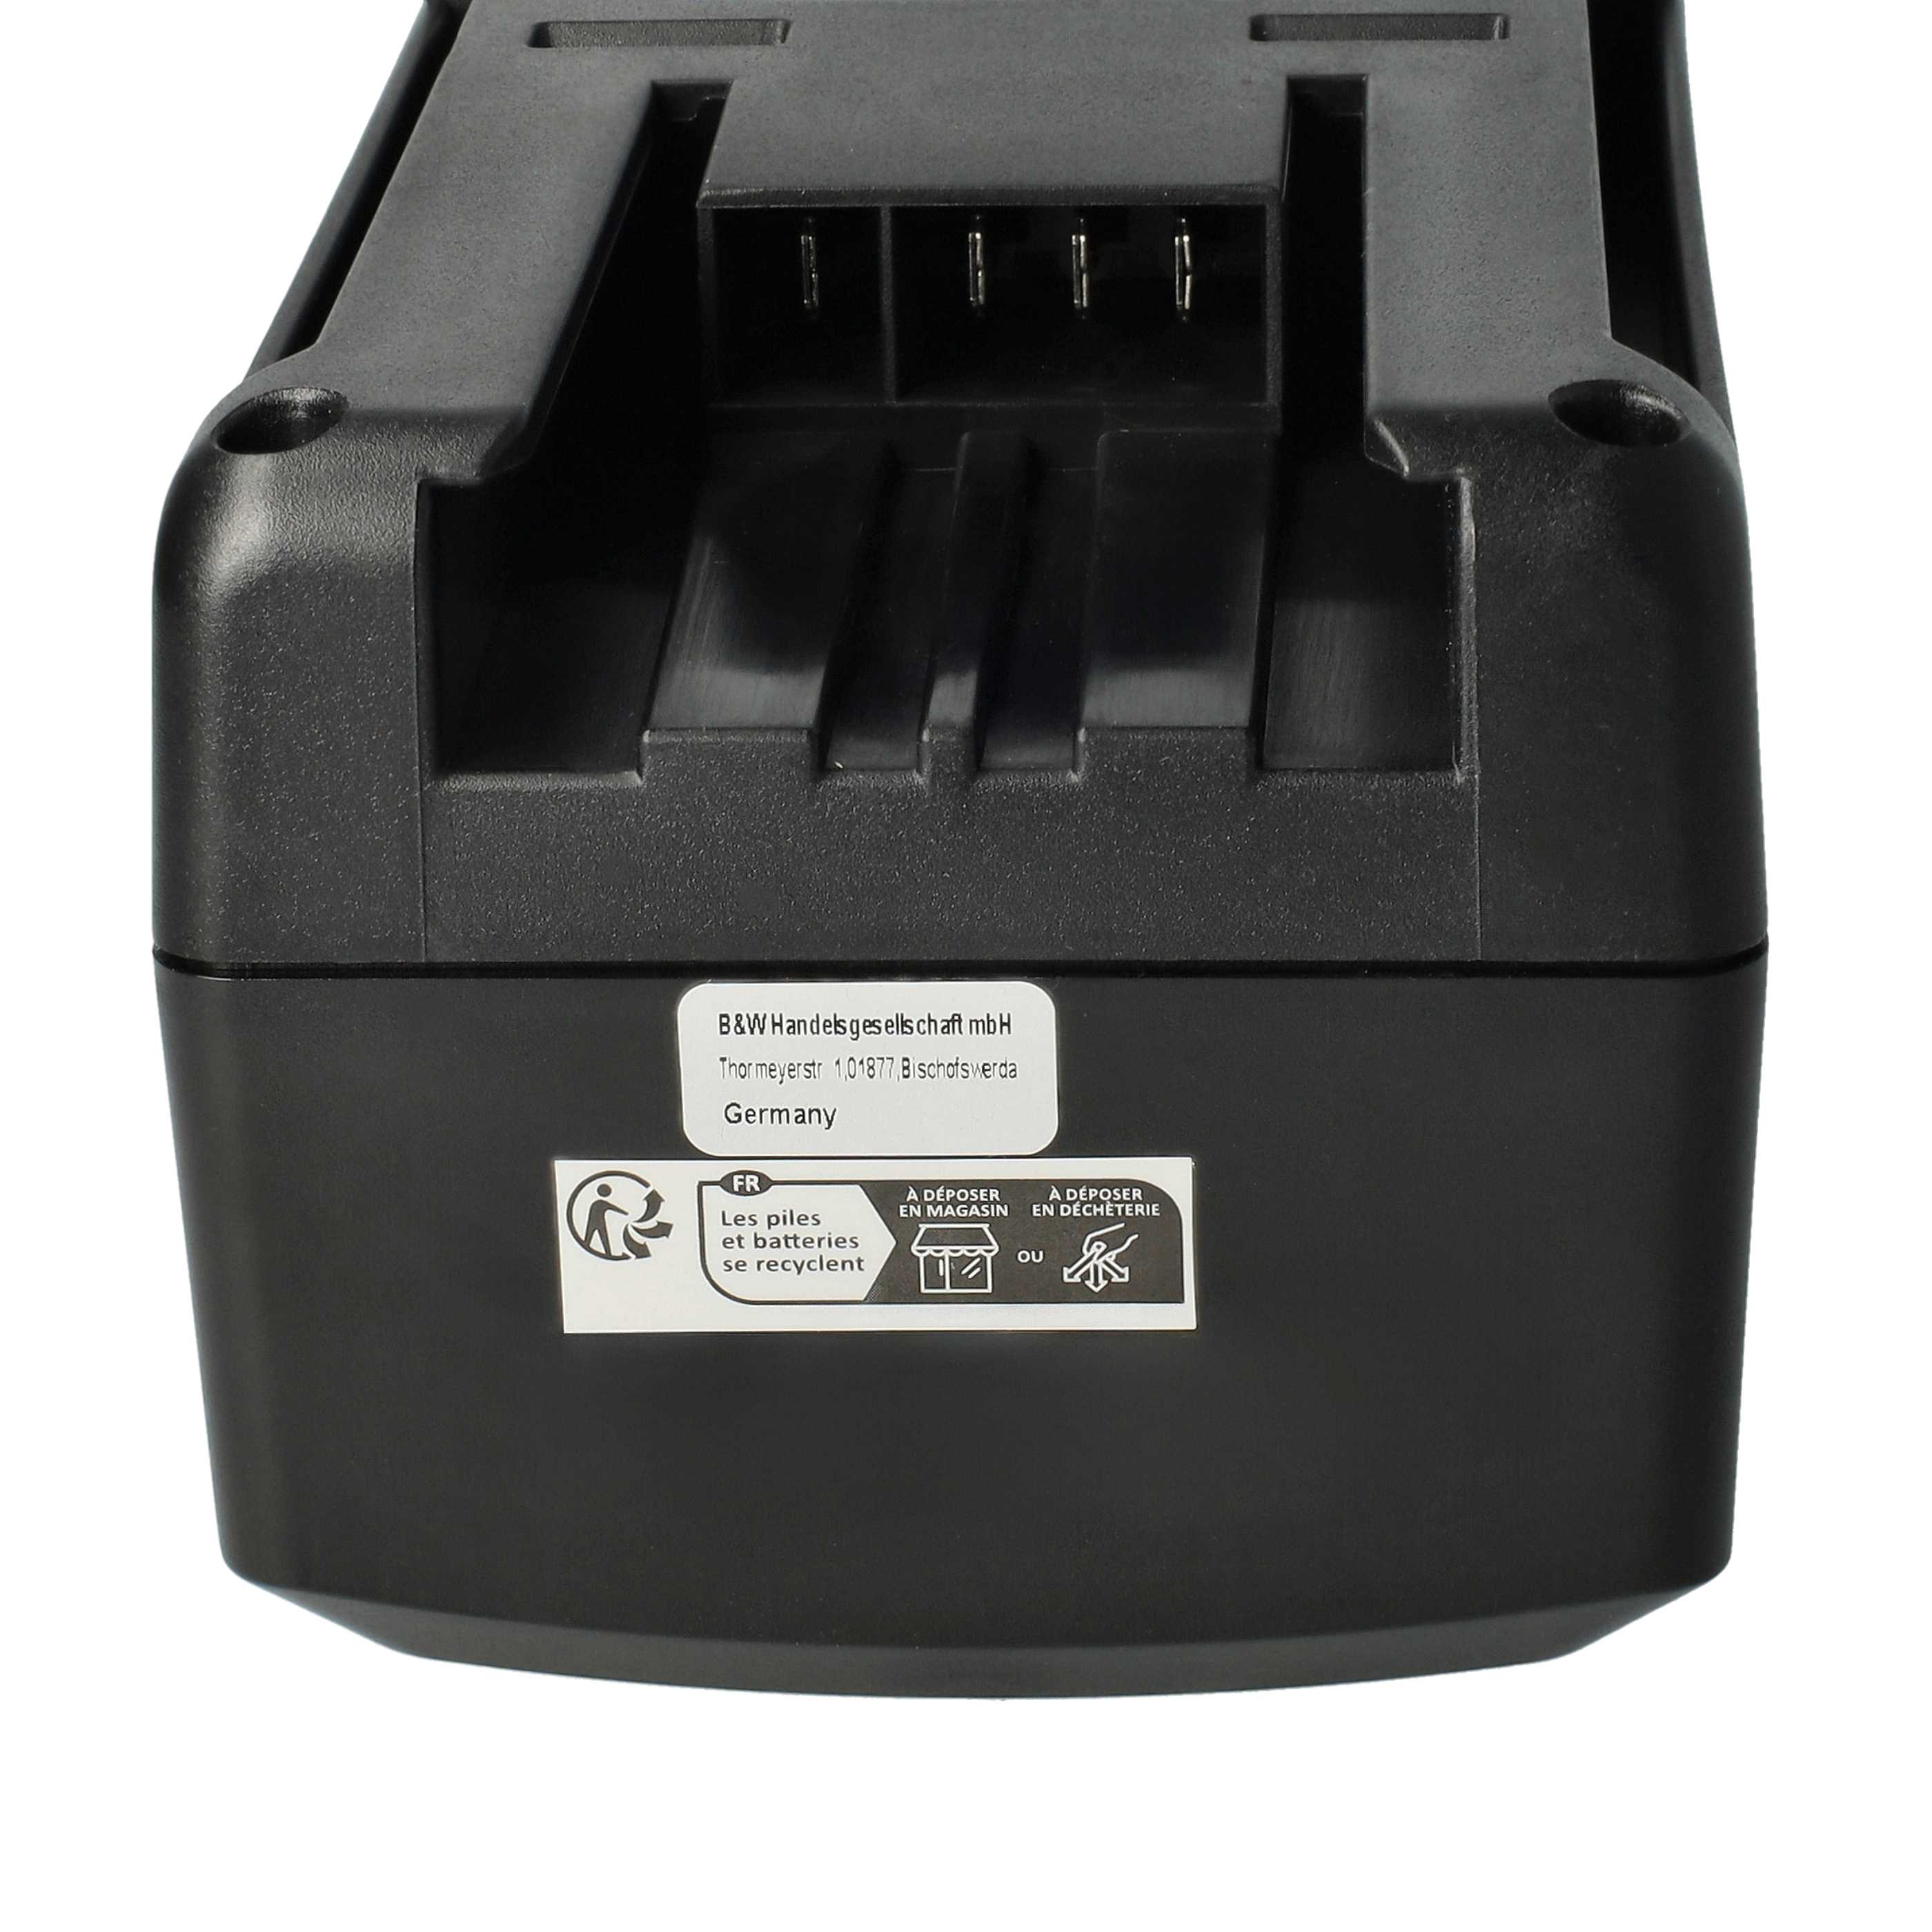 Batería reemplaza Kärcher 6.654-255.0, 6.654-183.0 para aspiradora Kärcher - 7500 mAh 25,2 V Li-Ion negro